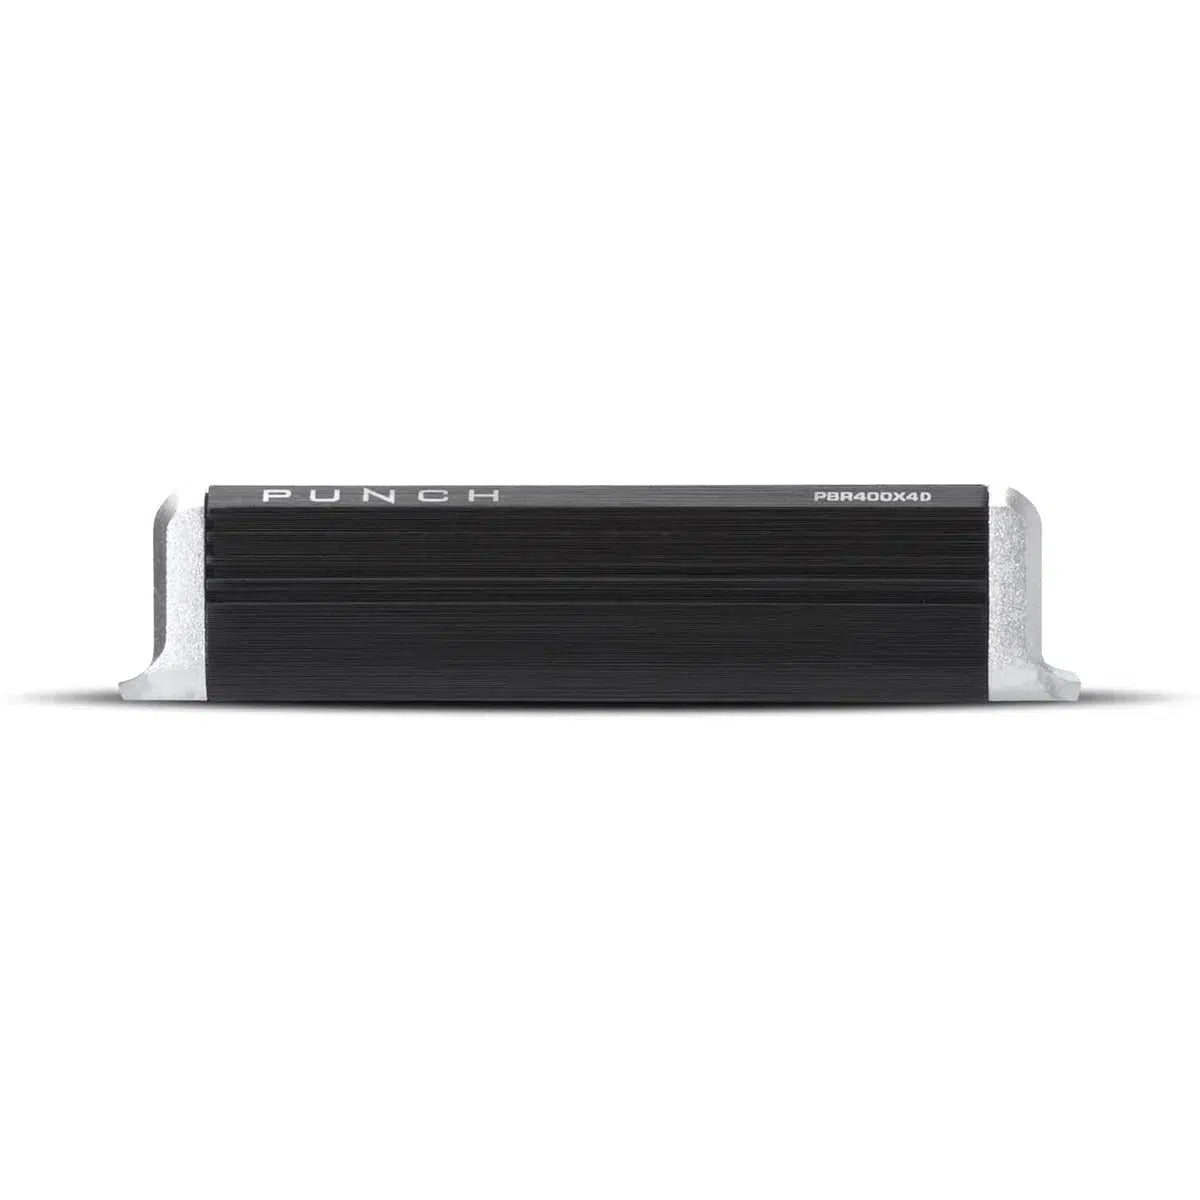 Rockford Fosgate-Punch PBR400x4D-4-Channel Amplifier-Masori.de